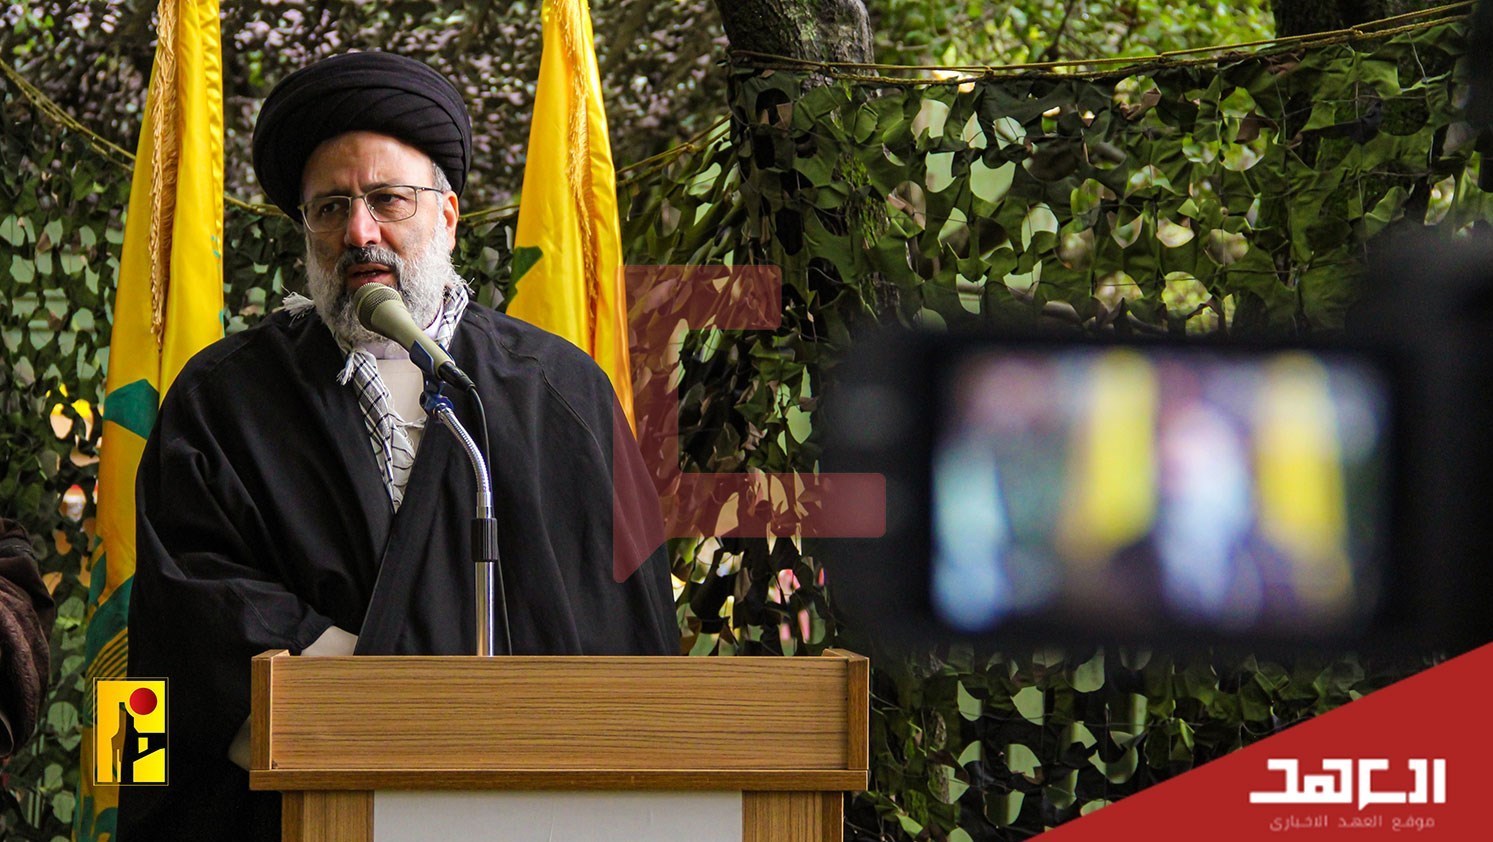 تصاویر بازدید شهید رئیسی از پایگاه حزب الله در جنوب لبنان 5